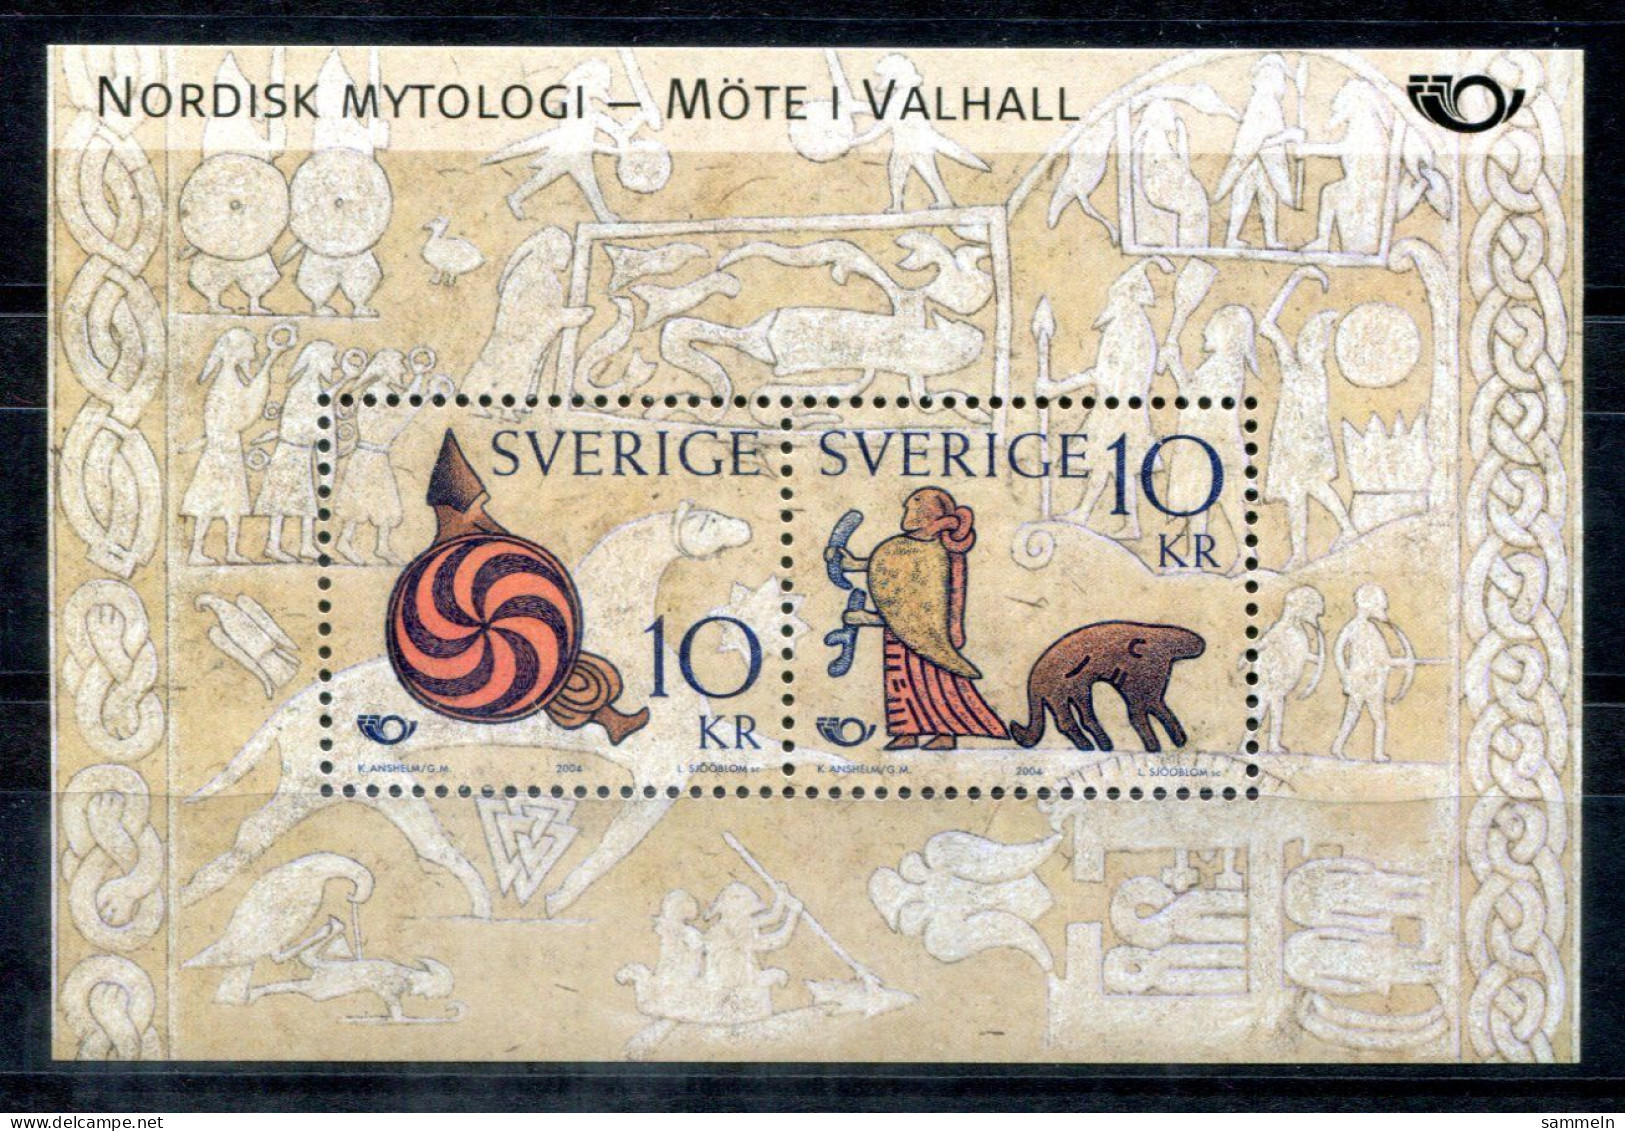 SCHWEDEN Block 18, Bl.18 Mnh - NORDEN 2004, Mythologie, Mythology - SWEDEN / SUÈDE - Blocks & Sheetlets